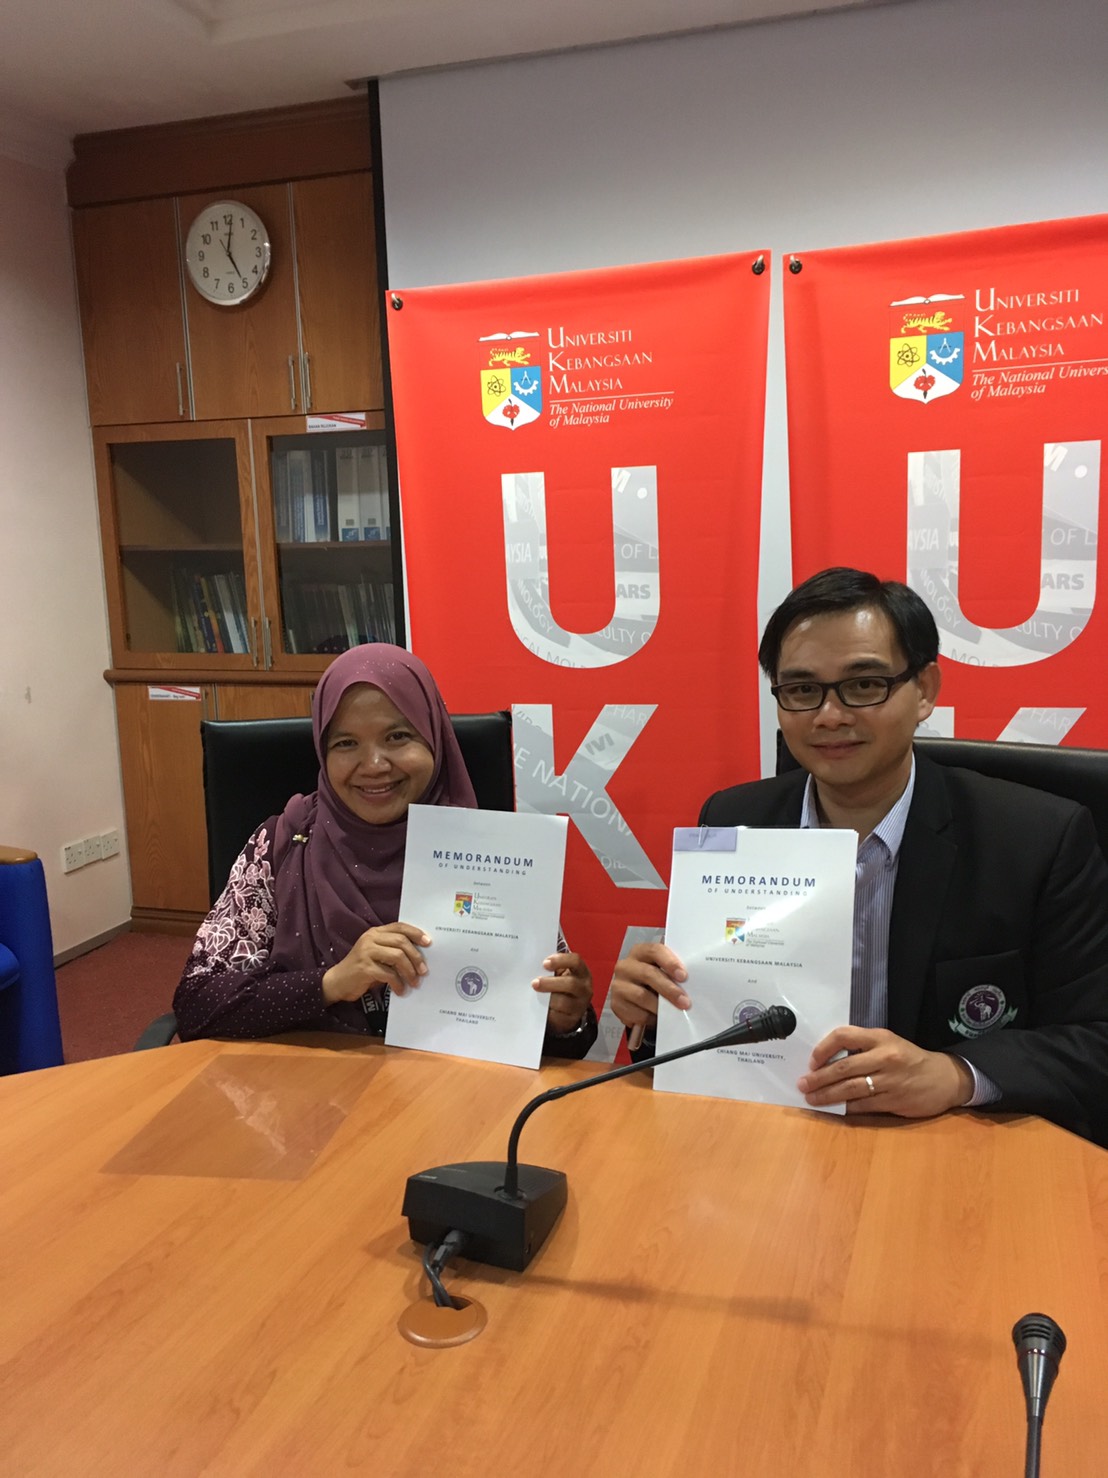 พิธีลงนามบันทึกข้อตกลงความร่วมมือทางวิชาการ ระหว่างคณะนิติศาสตร์ มหาวิทยาลัยเชียงใหม่ และ Universiti Kebangsaan Malaysia (UKM)